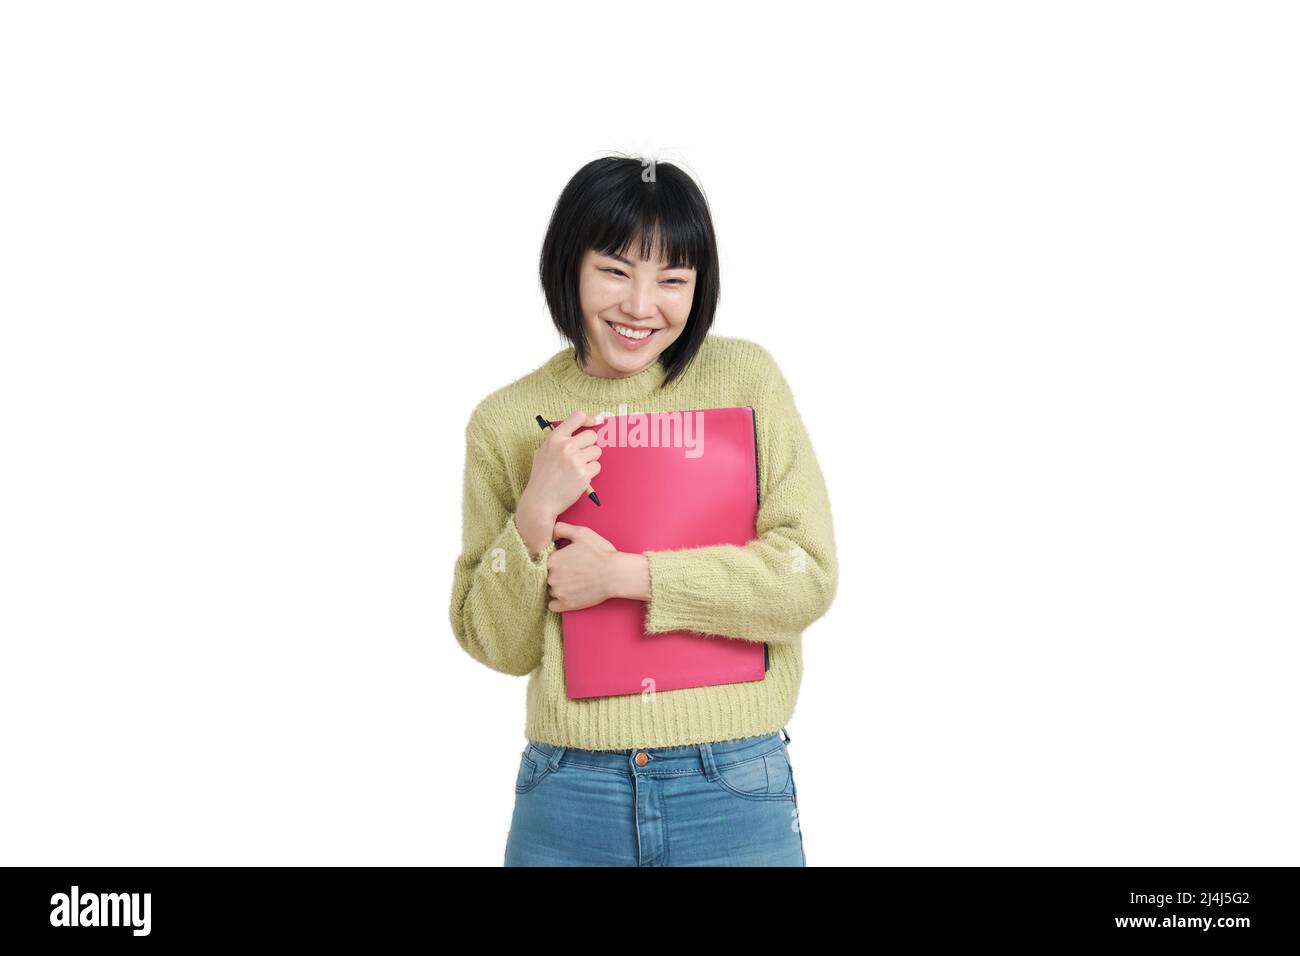 Junge asiatische Studentin mit kokettlichem Lächeln, isoliert. Stockfoto